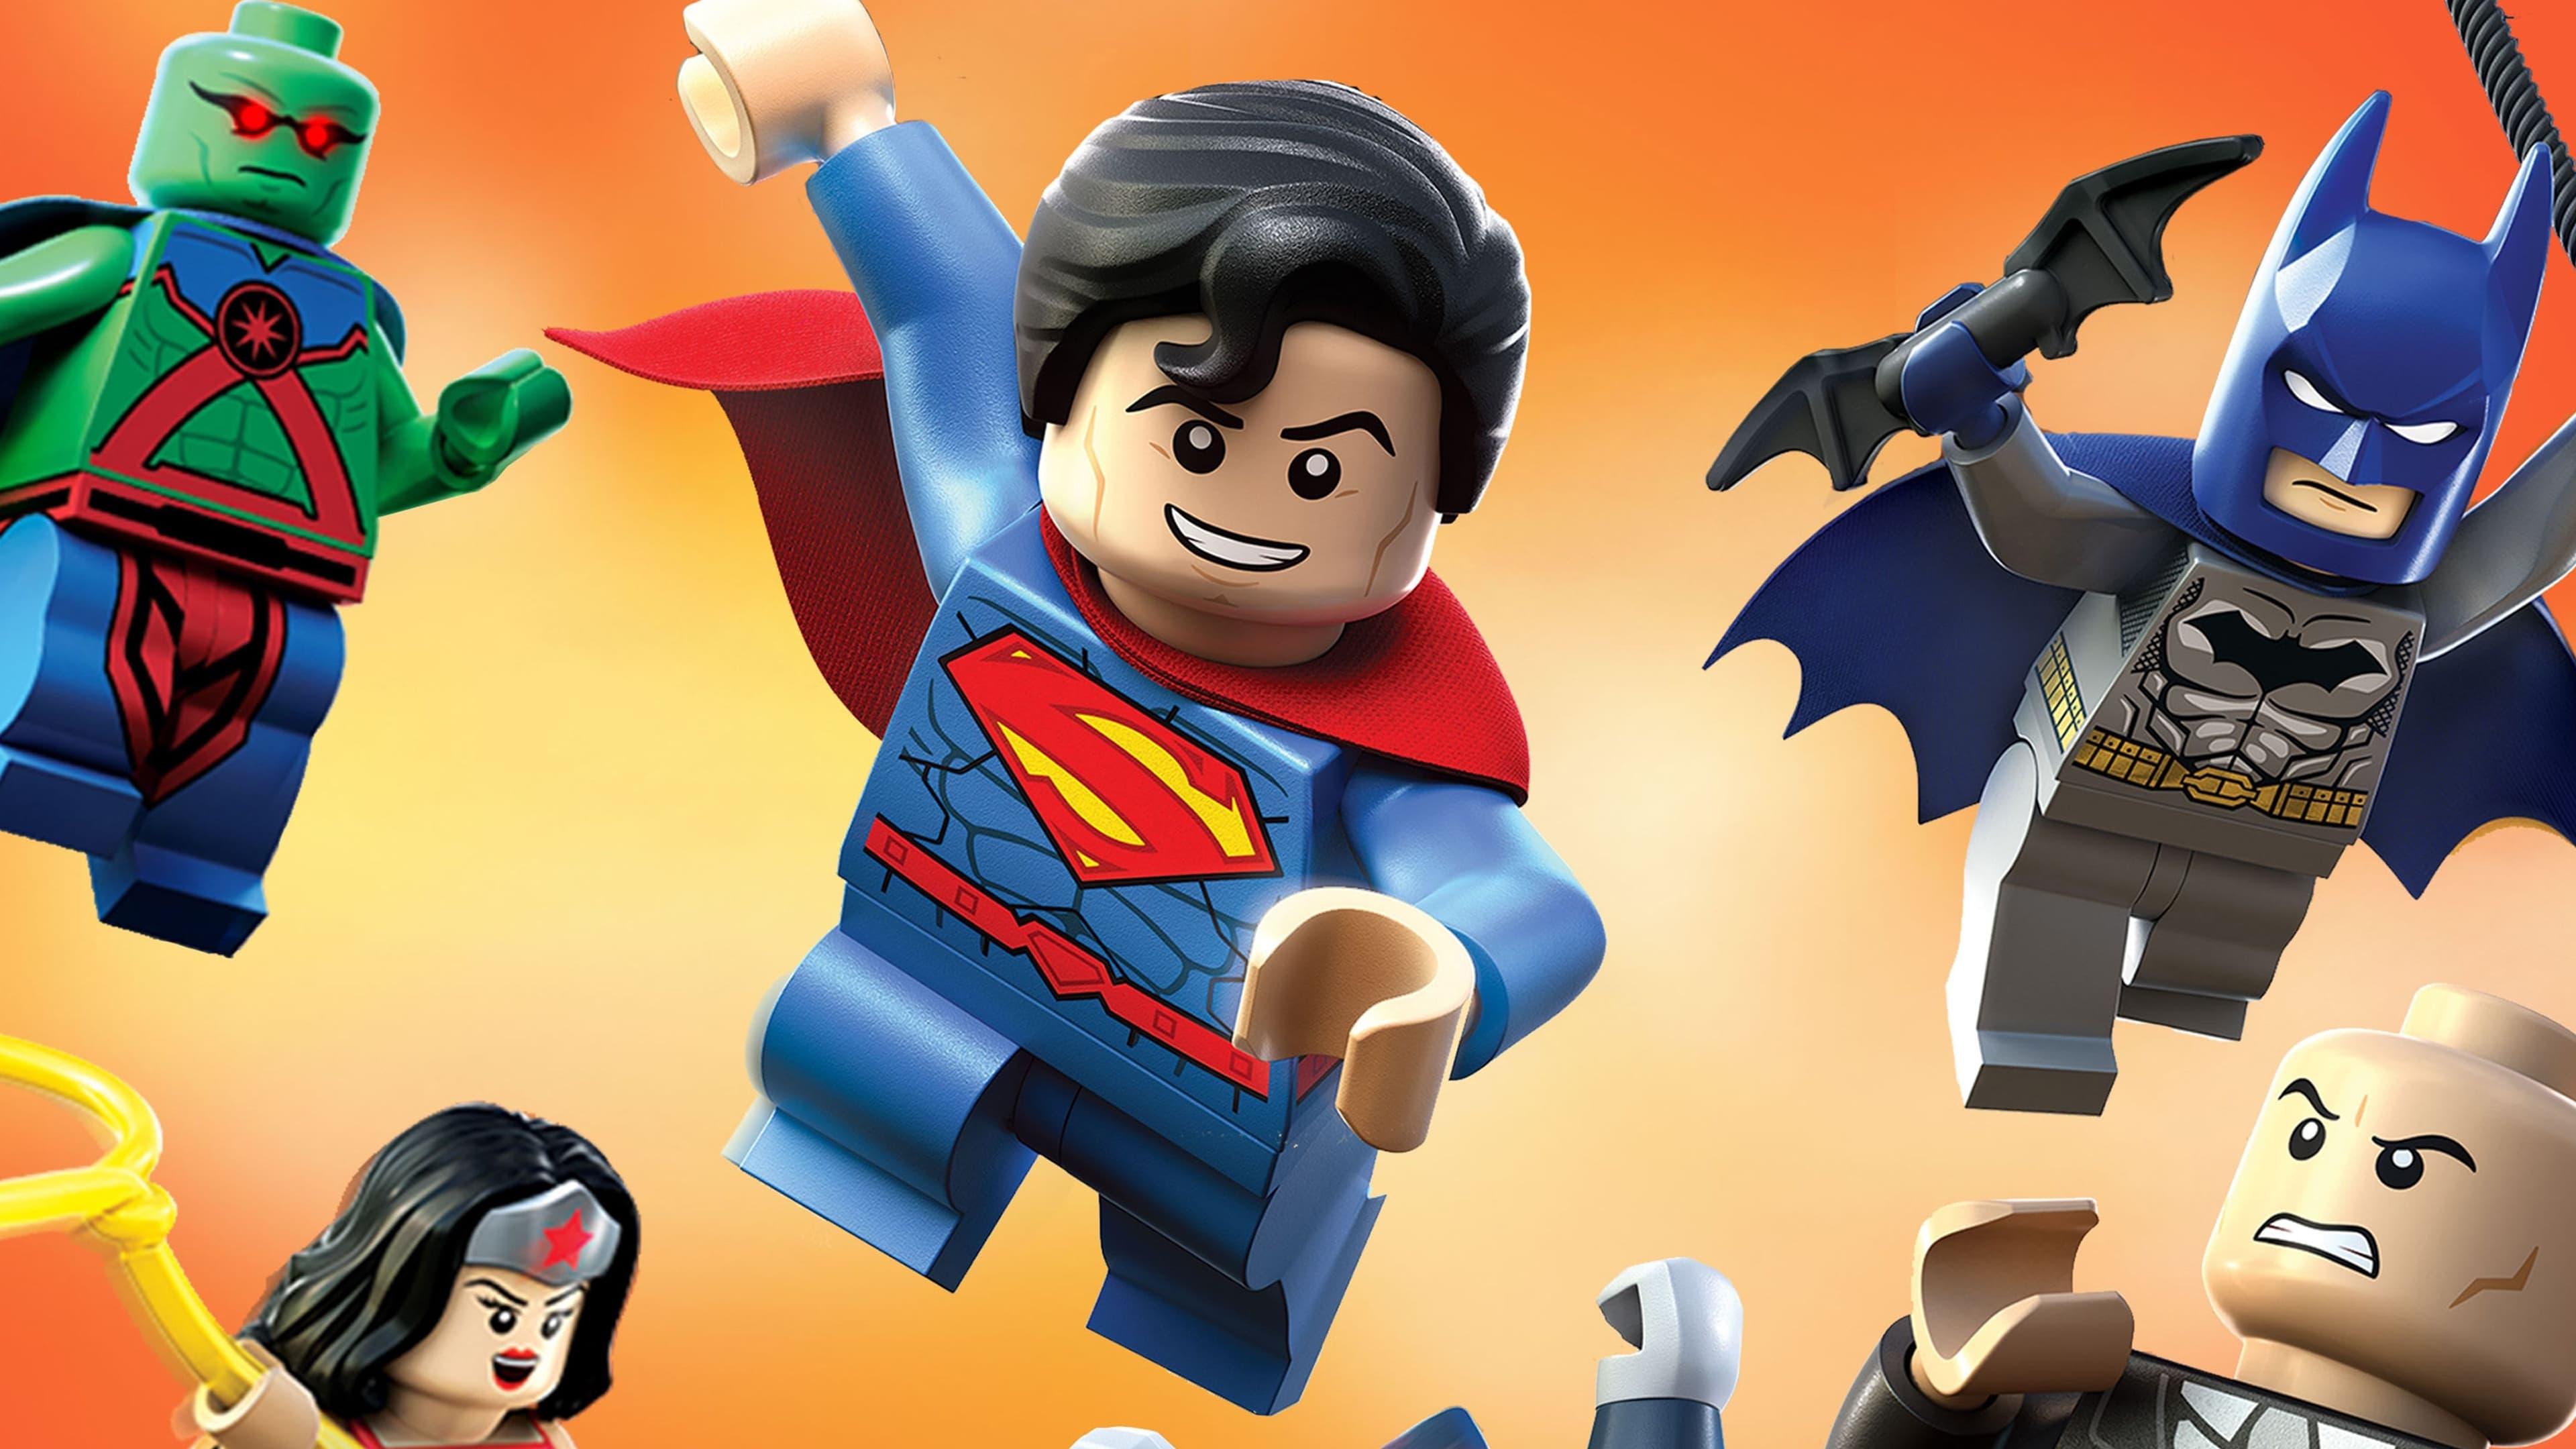 LEGO DC Comics Super Heroes: Justice League - Attack of the Legion of Doom! backdrop